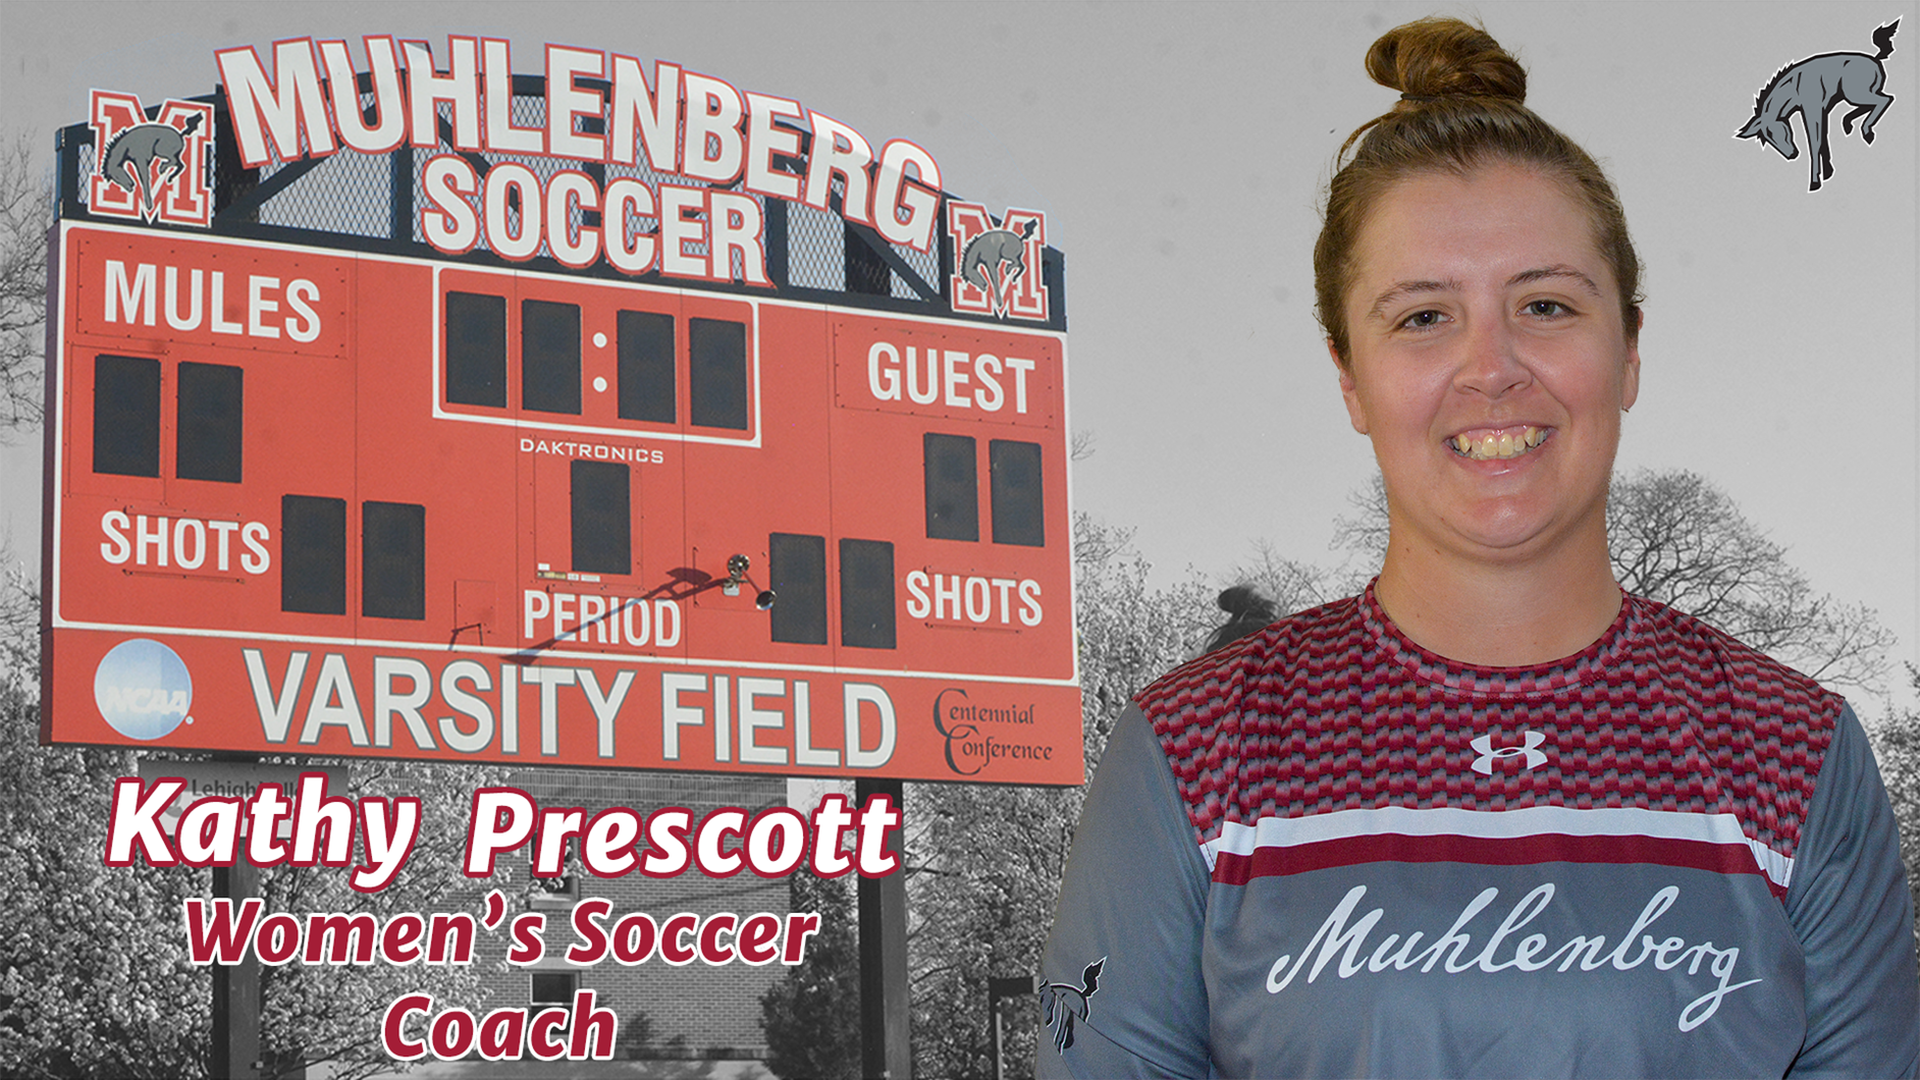 Prescott Named Muhlenberg Women's Soccer Coach